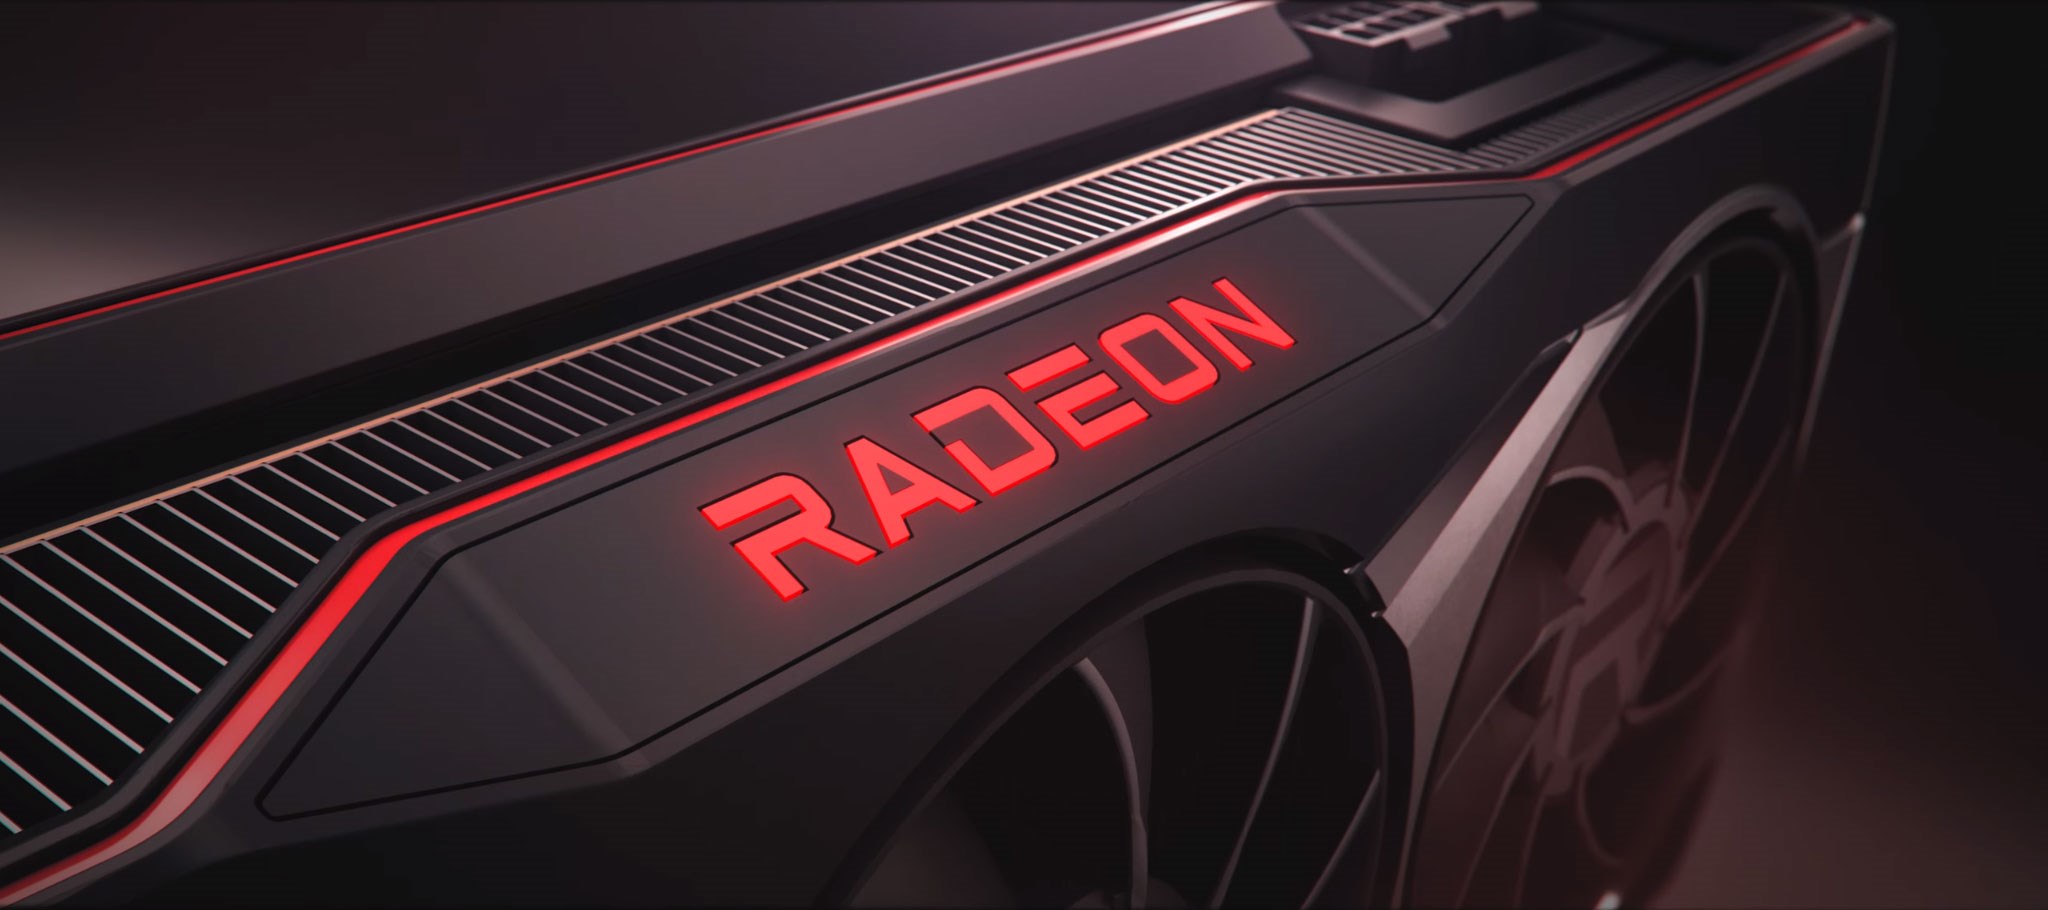 Son AMD sürücü güncellemesi devasa performans sorununa neden oldu